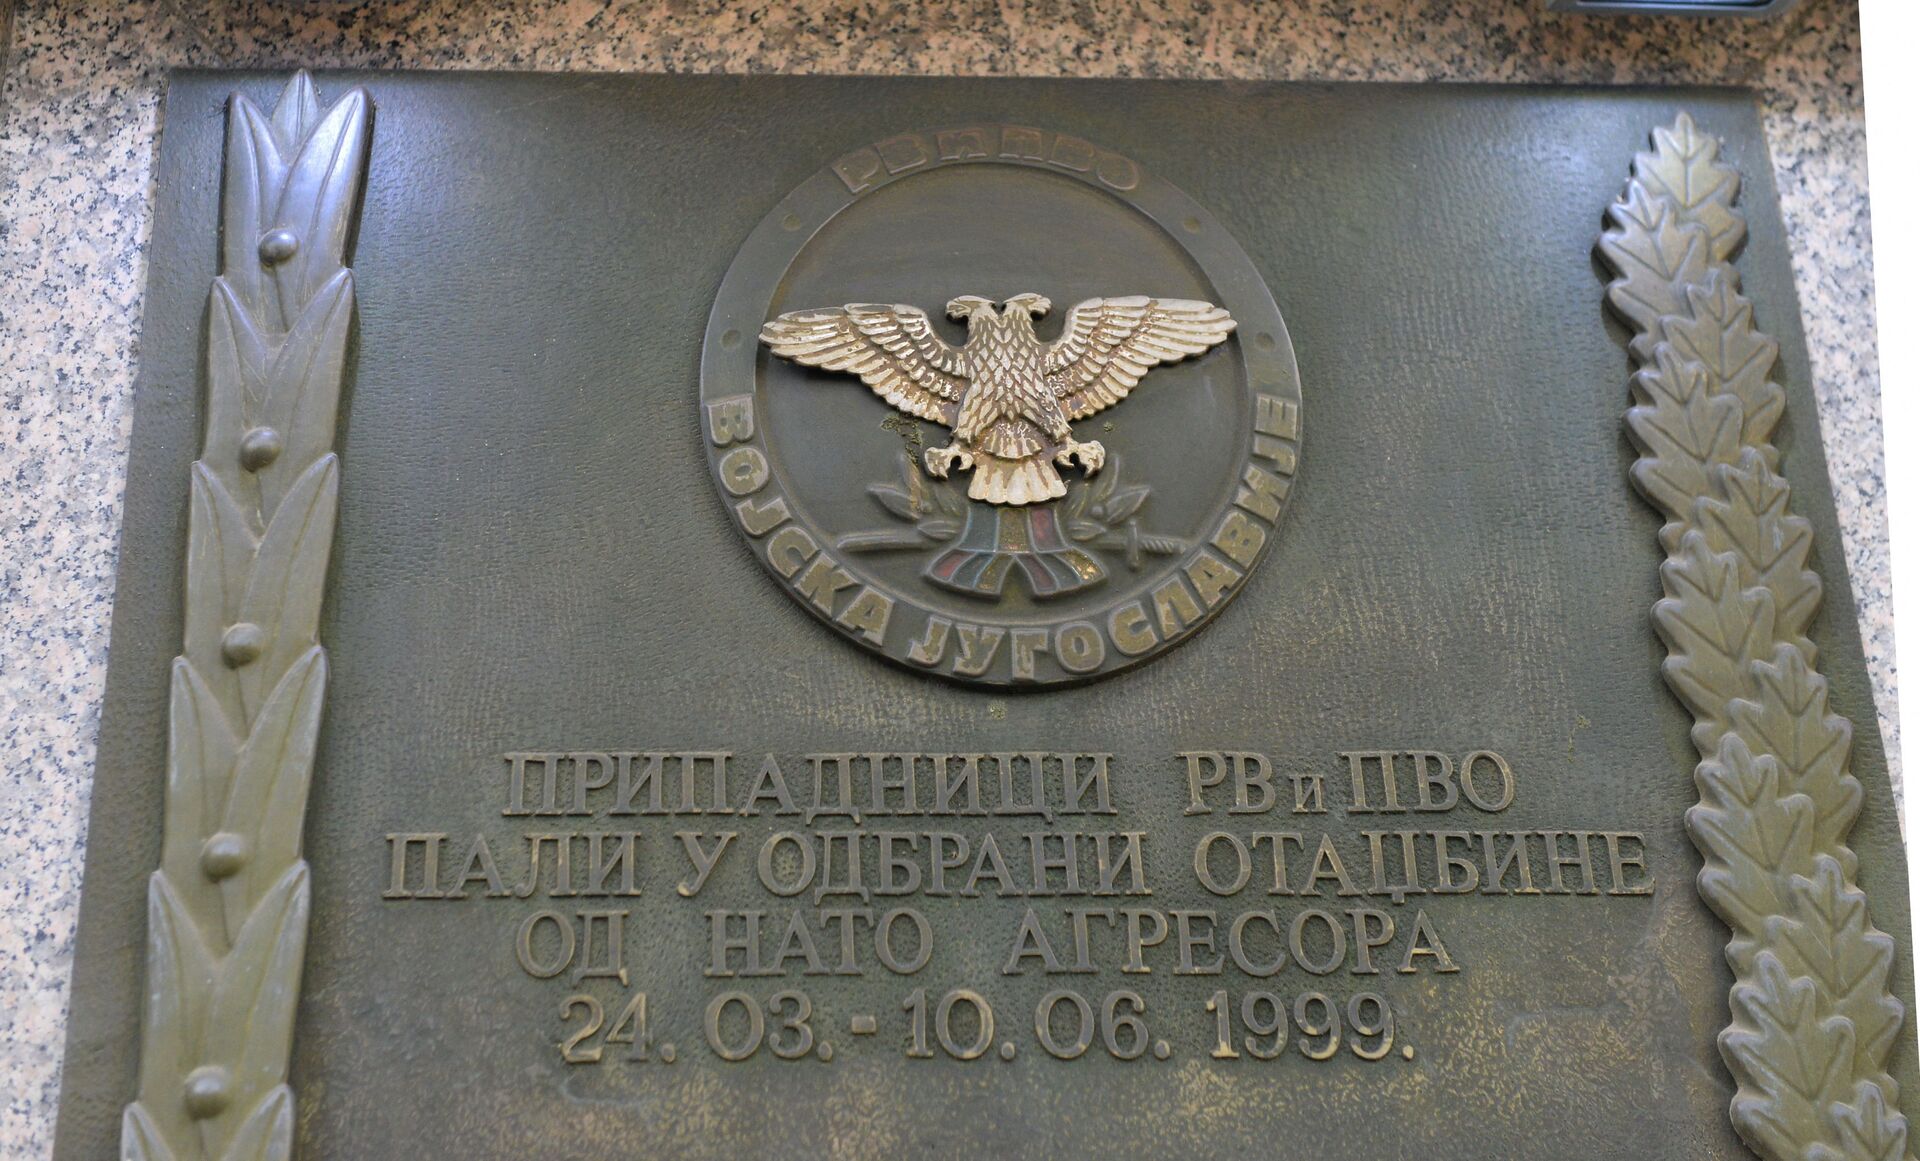 Ovako je NATO rušio Beograd /foto/ - Sputnik Srbija, 1920, 24.03.2021